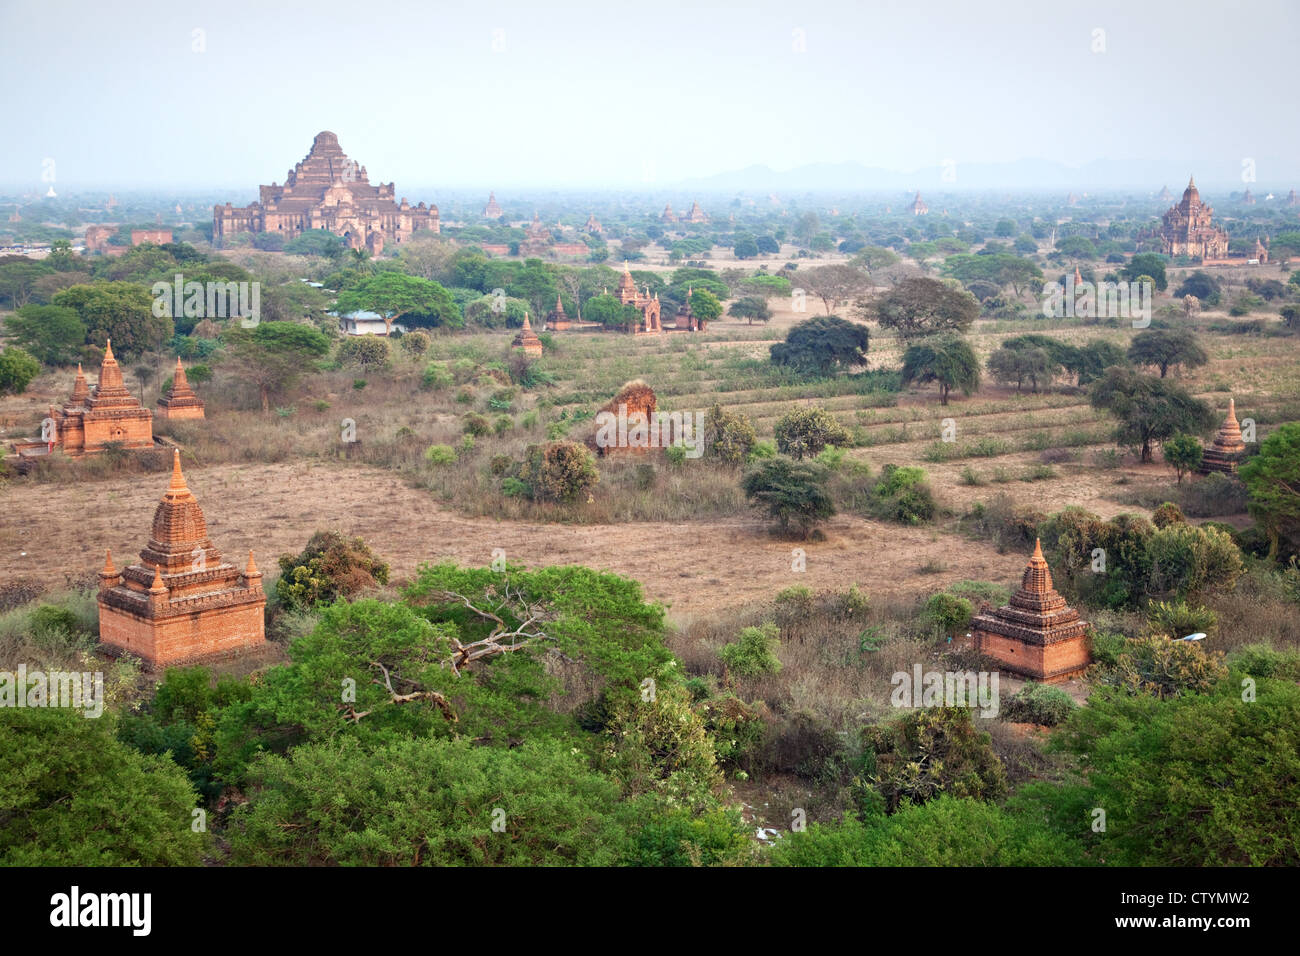 Panorama de la llanura de Bagan con templos budistas en la zona arqueológica de Bagan, Myanmar. Foto de stock